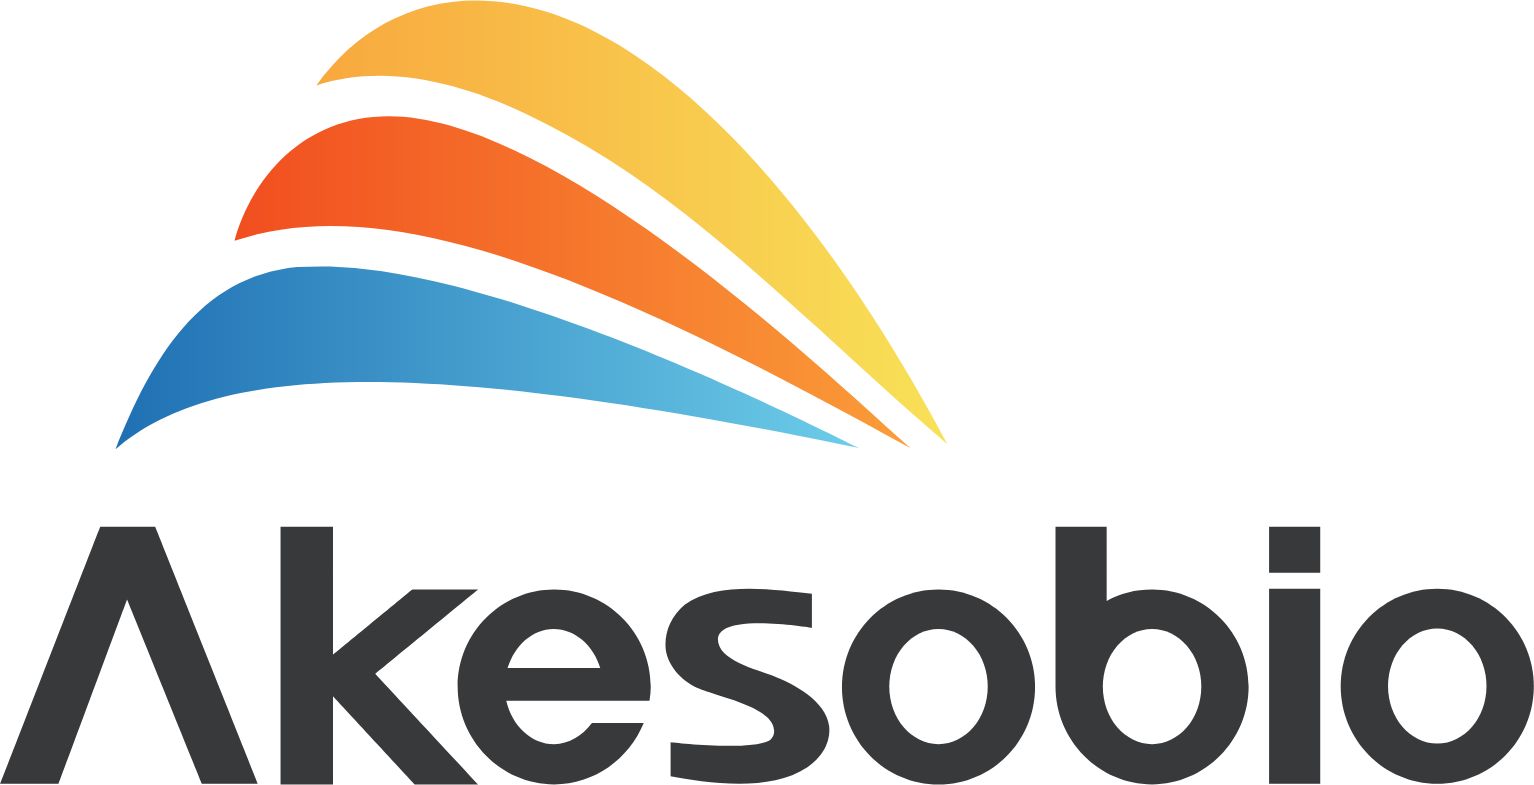 Akeso logo large (transparent PNG)